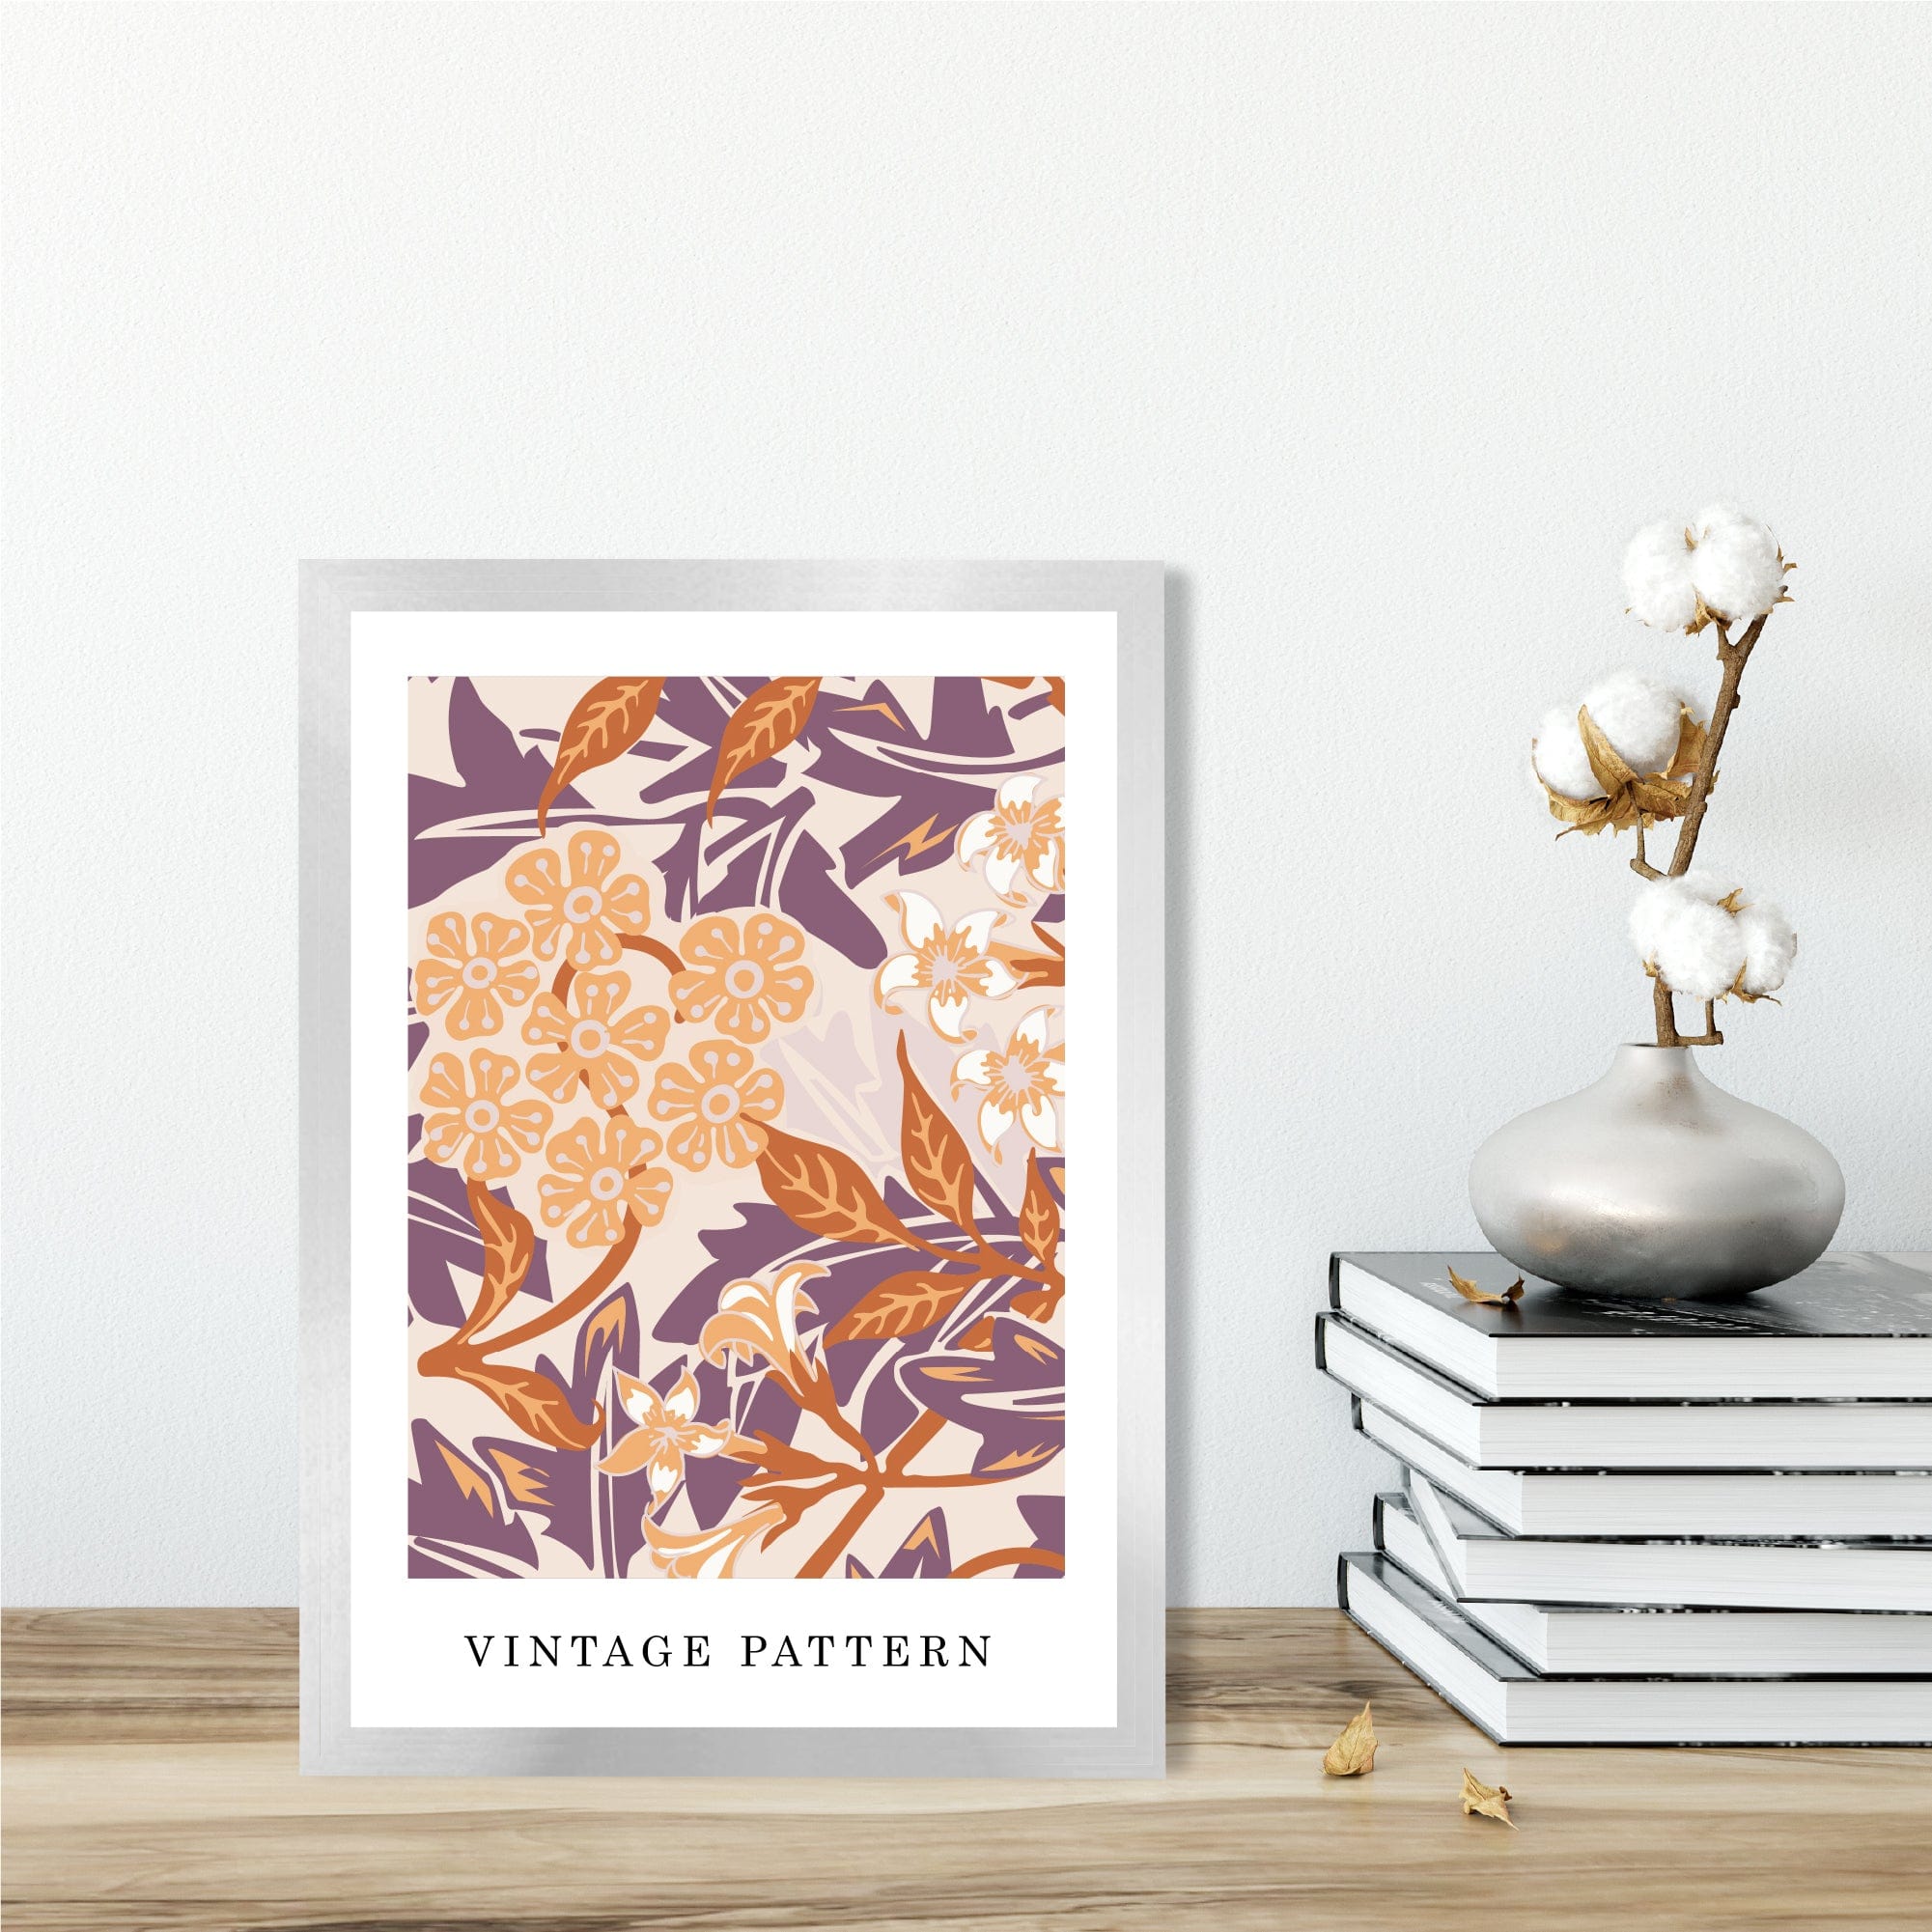 William Morris Iris Floral Vintage Poster in Autumn Orange and Purple